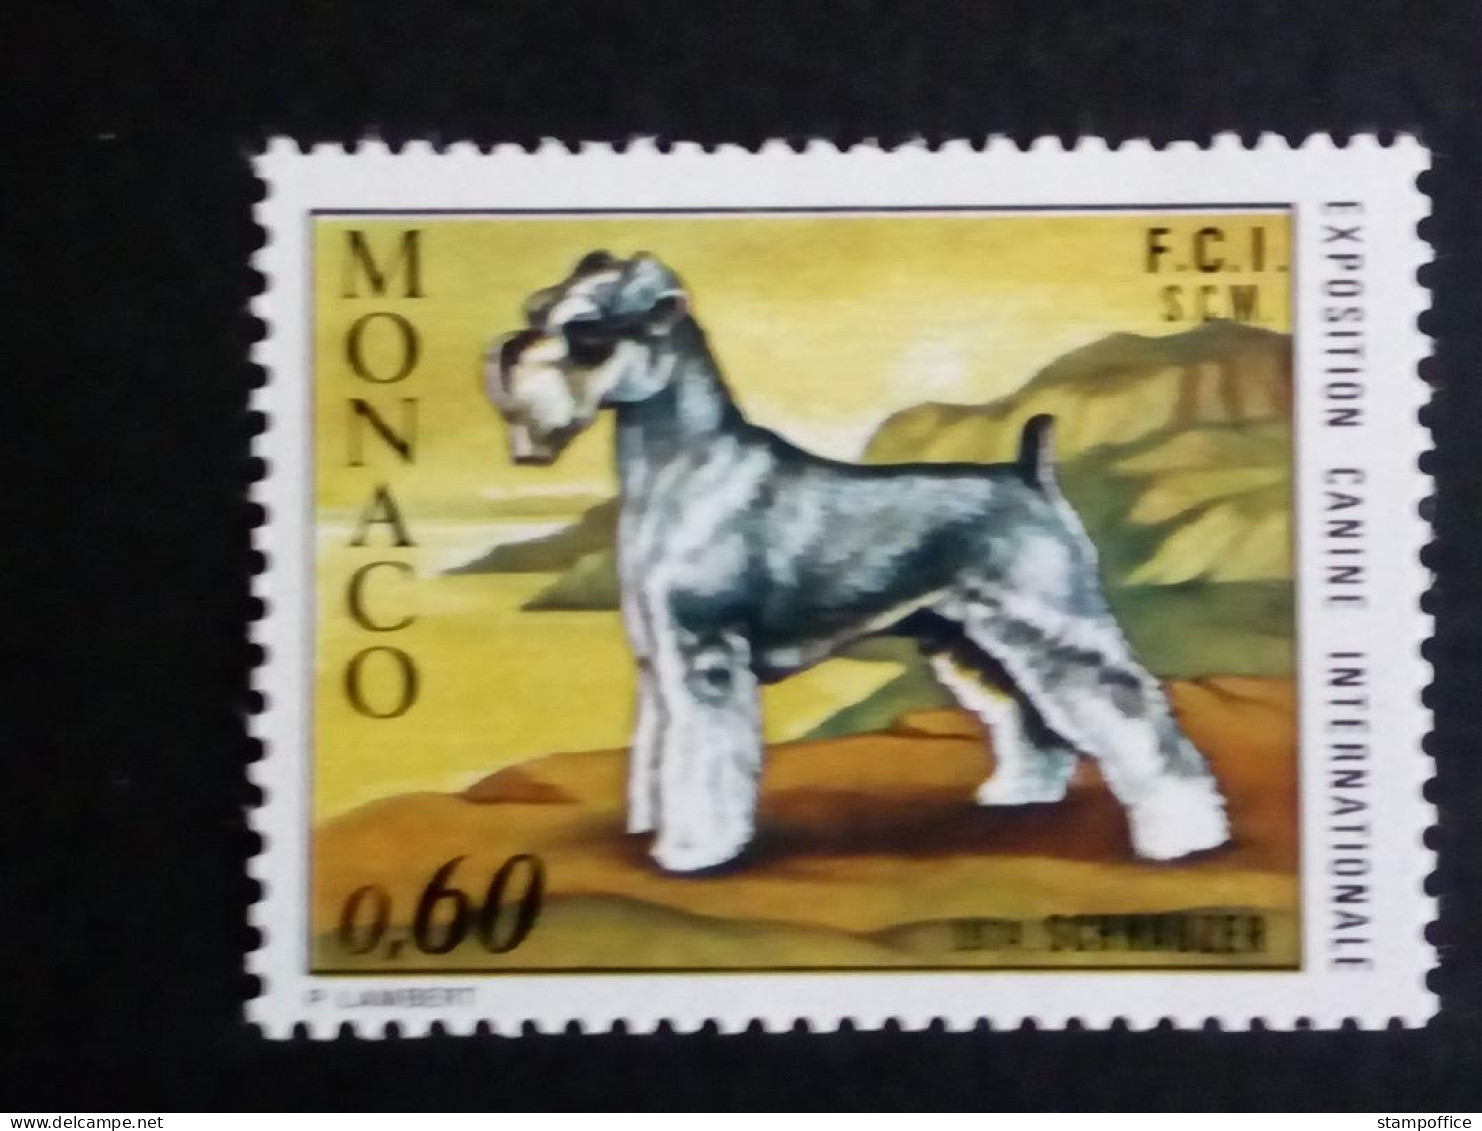 MONACO MI-NR. 1120 POSTFRISCH(MINT) HUNDEAUSSTELLUNG MONTE CARLO 1974 SCHNAUZER - Honden